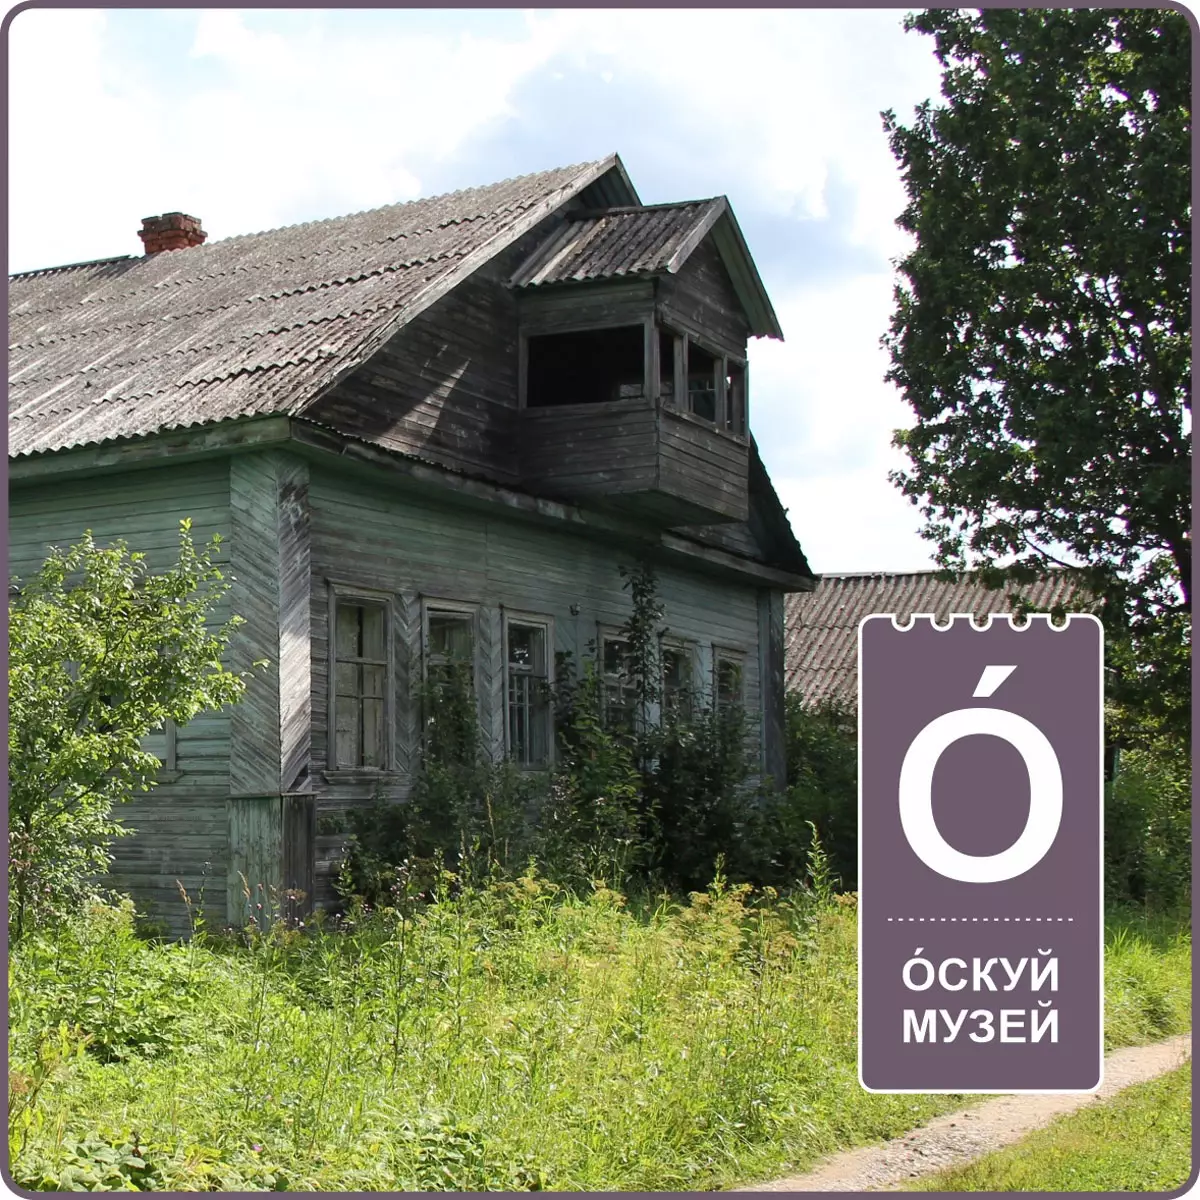 Проект «Незаписанные истории Славного села Оскуй» получил грант Президентского фонда культурных инициатив